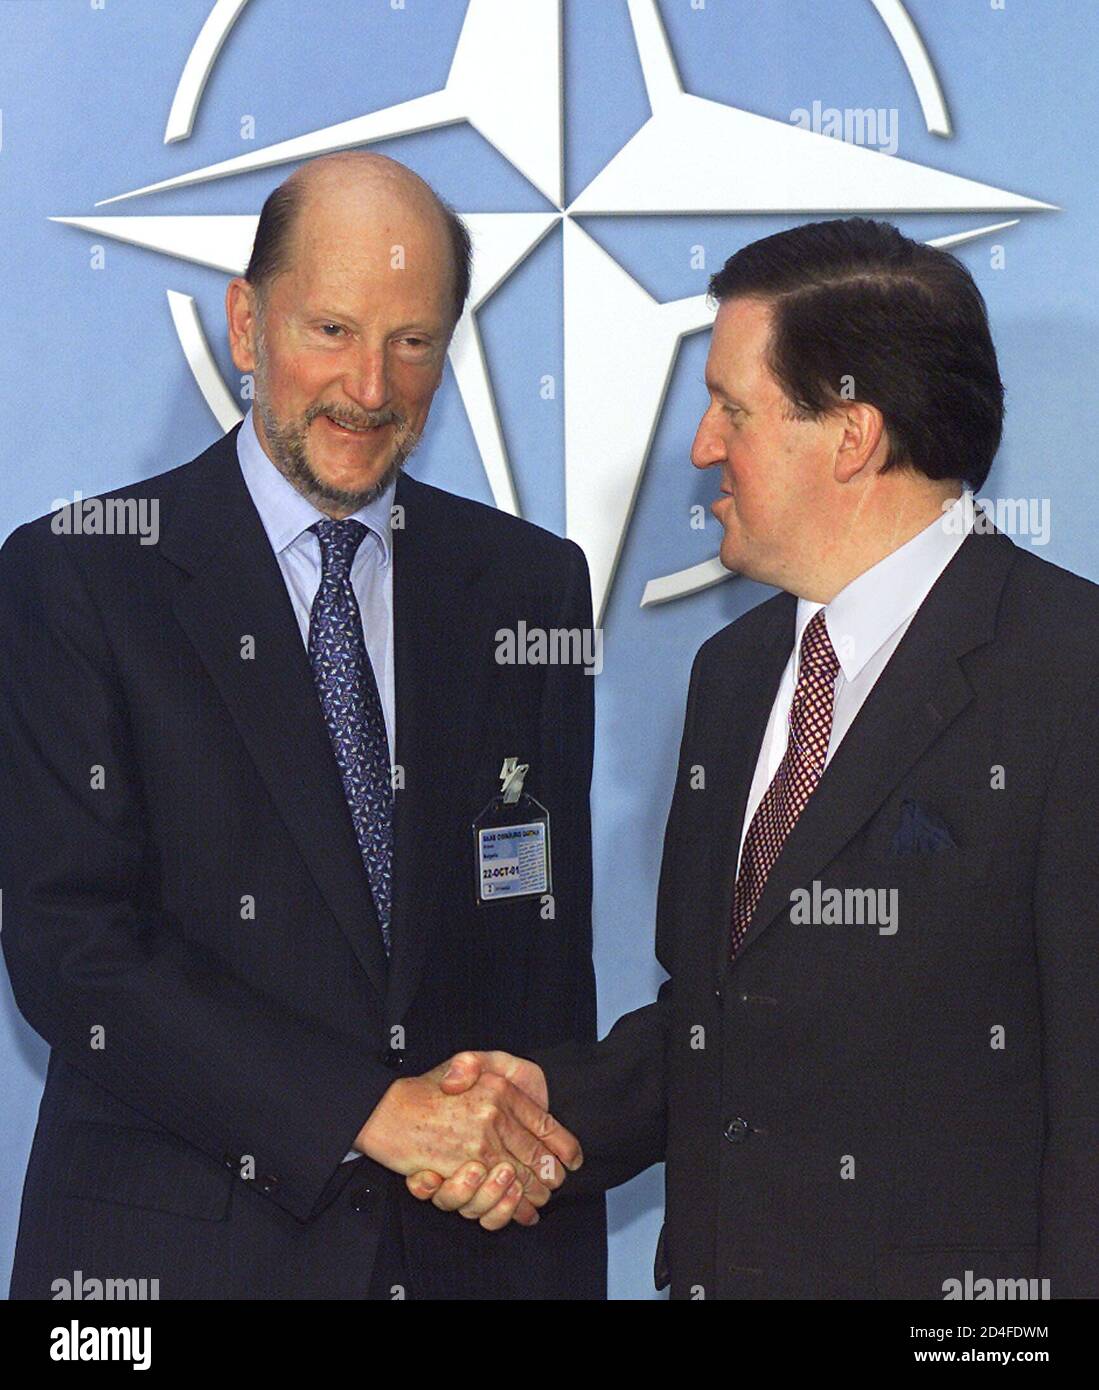 Le Premier ministre bulgare Simeon Saxe-Cobourg (L) est accueilli par le Secrétaire général de l'OTAN George Robertson au siège de l'Alliance à Bruxelles le 22 octobre 2001. Saxe-Cobourg est en visite officielle de deux jours en Belgique. REUTERS/Yves Herman HRM/ Banque D'Images